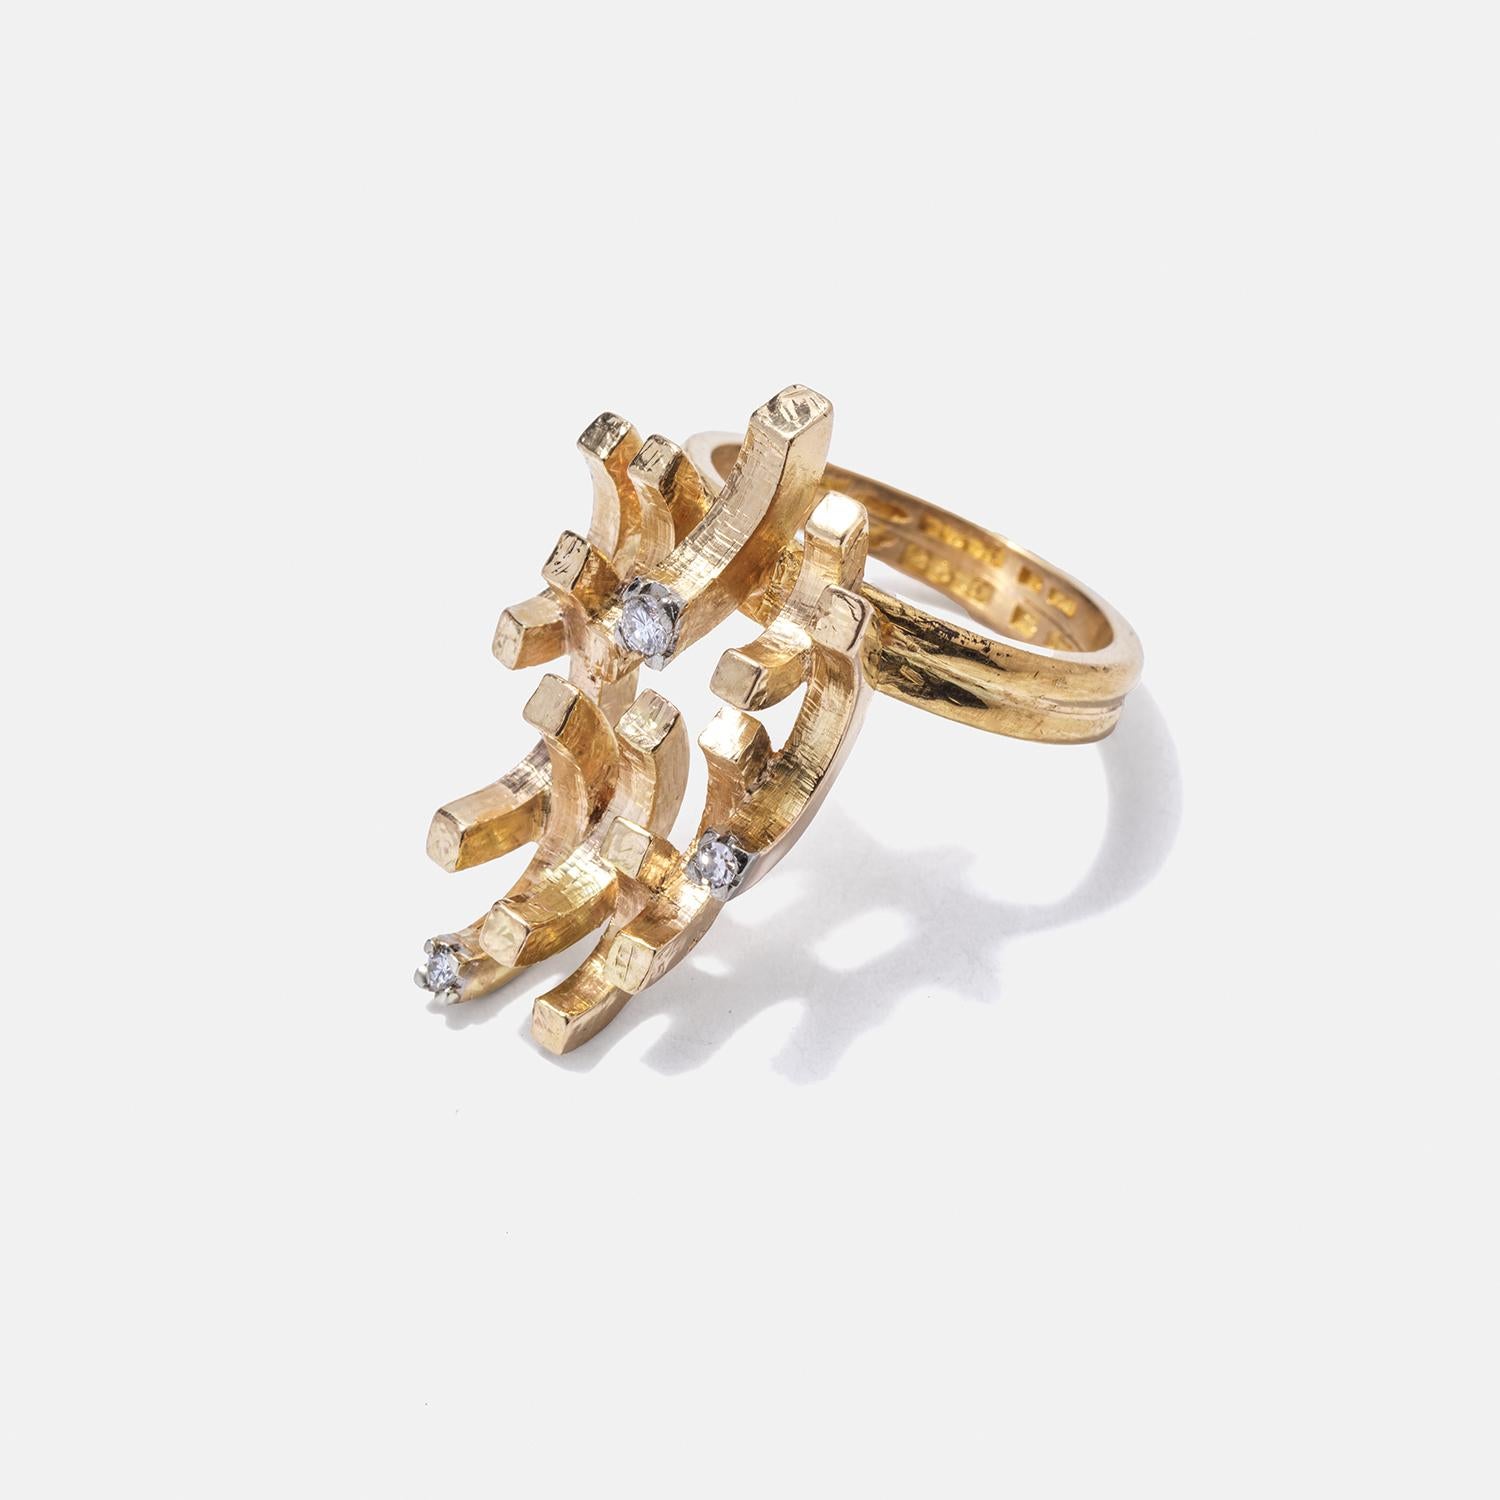 Der Schaft dieses exquisiten Rings besteht aus zwei 23-karätigen Goldbändern, die miteinander verschmolzen sind und so eine robuste und elegante Basis bilden. Darüber befindet sich ein Ornament aus 18-karätigem Gold, das einer kleinen, zarten Krone